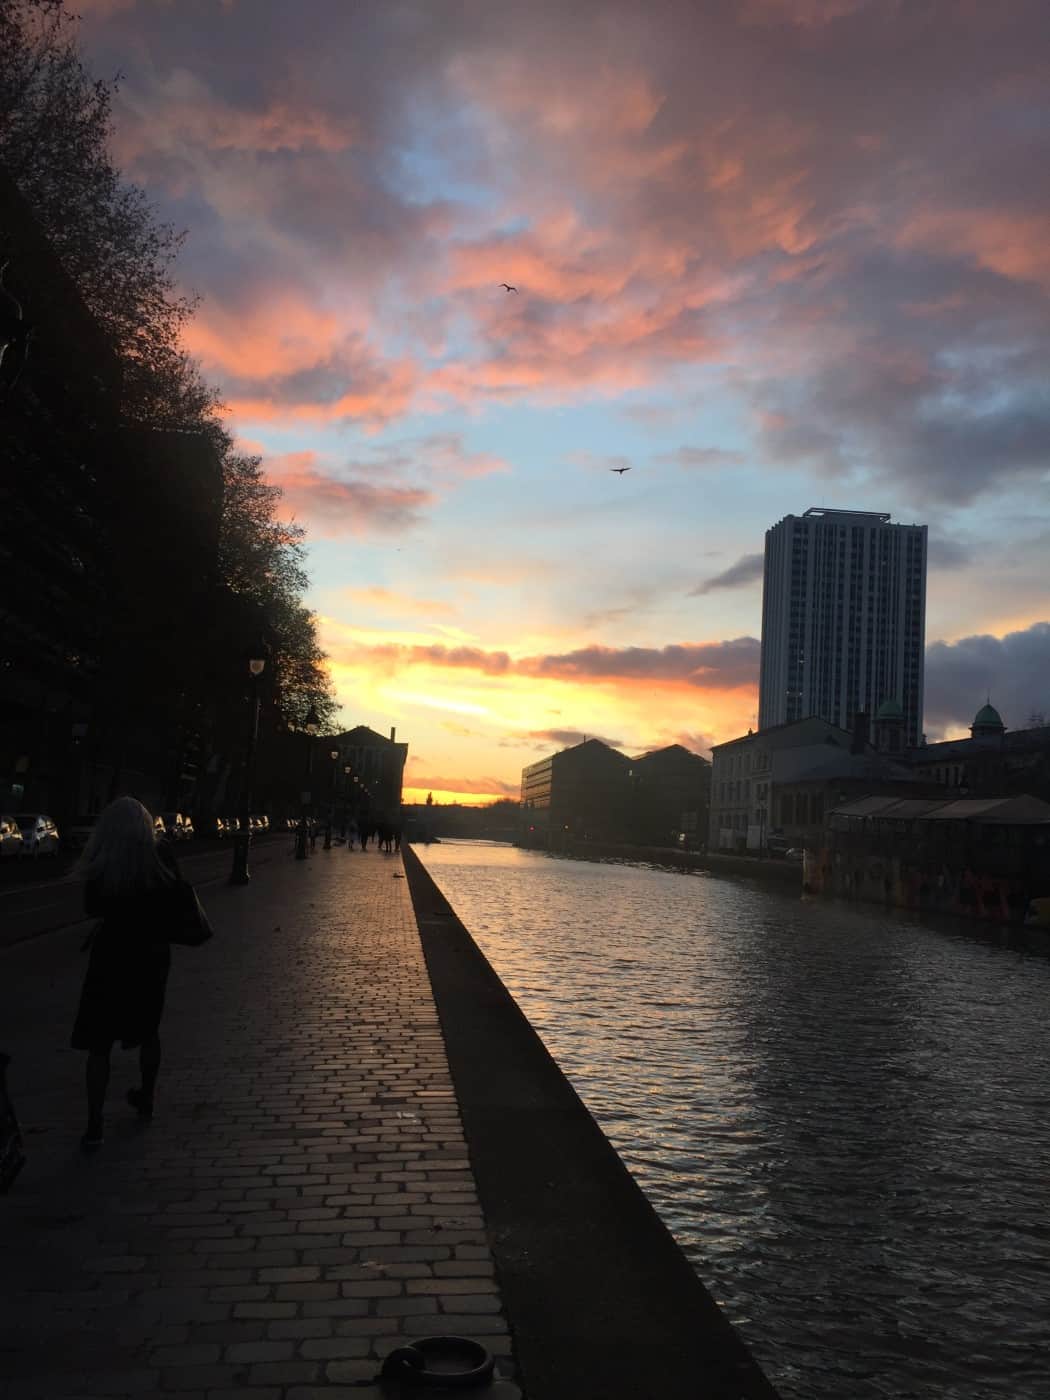 Sunset at Quai de la Marne canal outside our campus